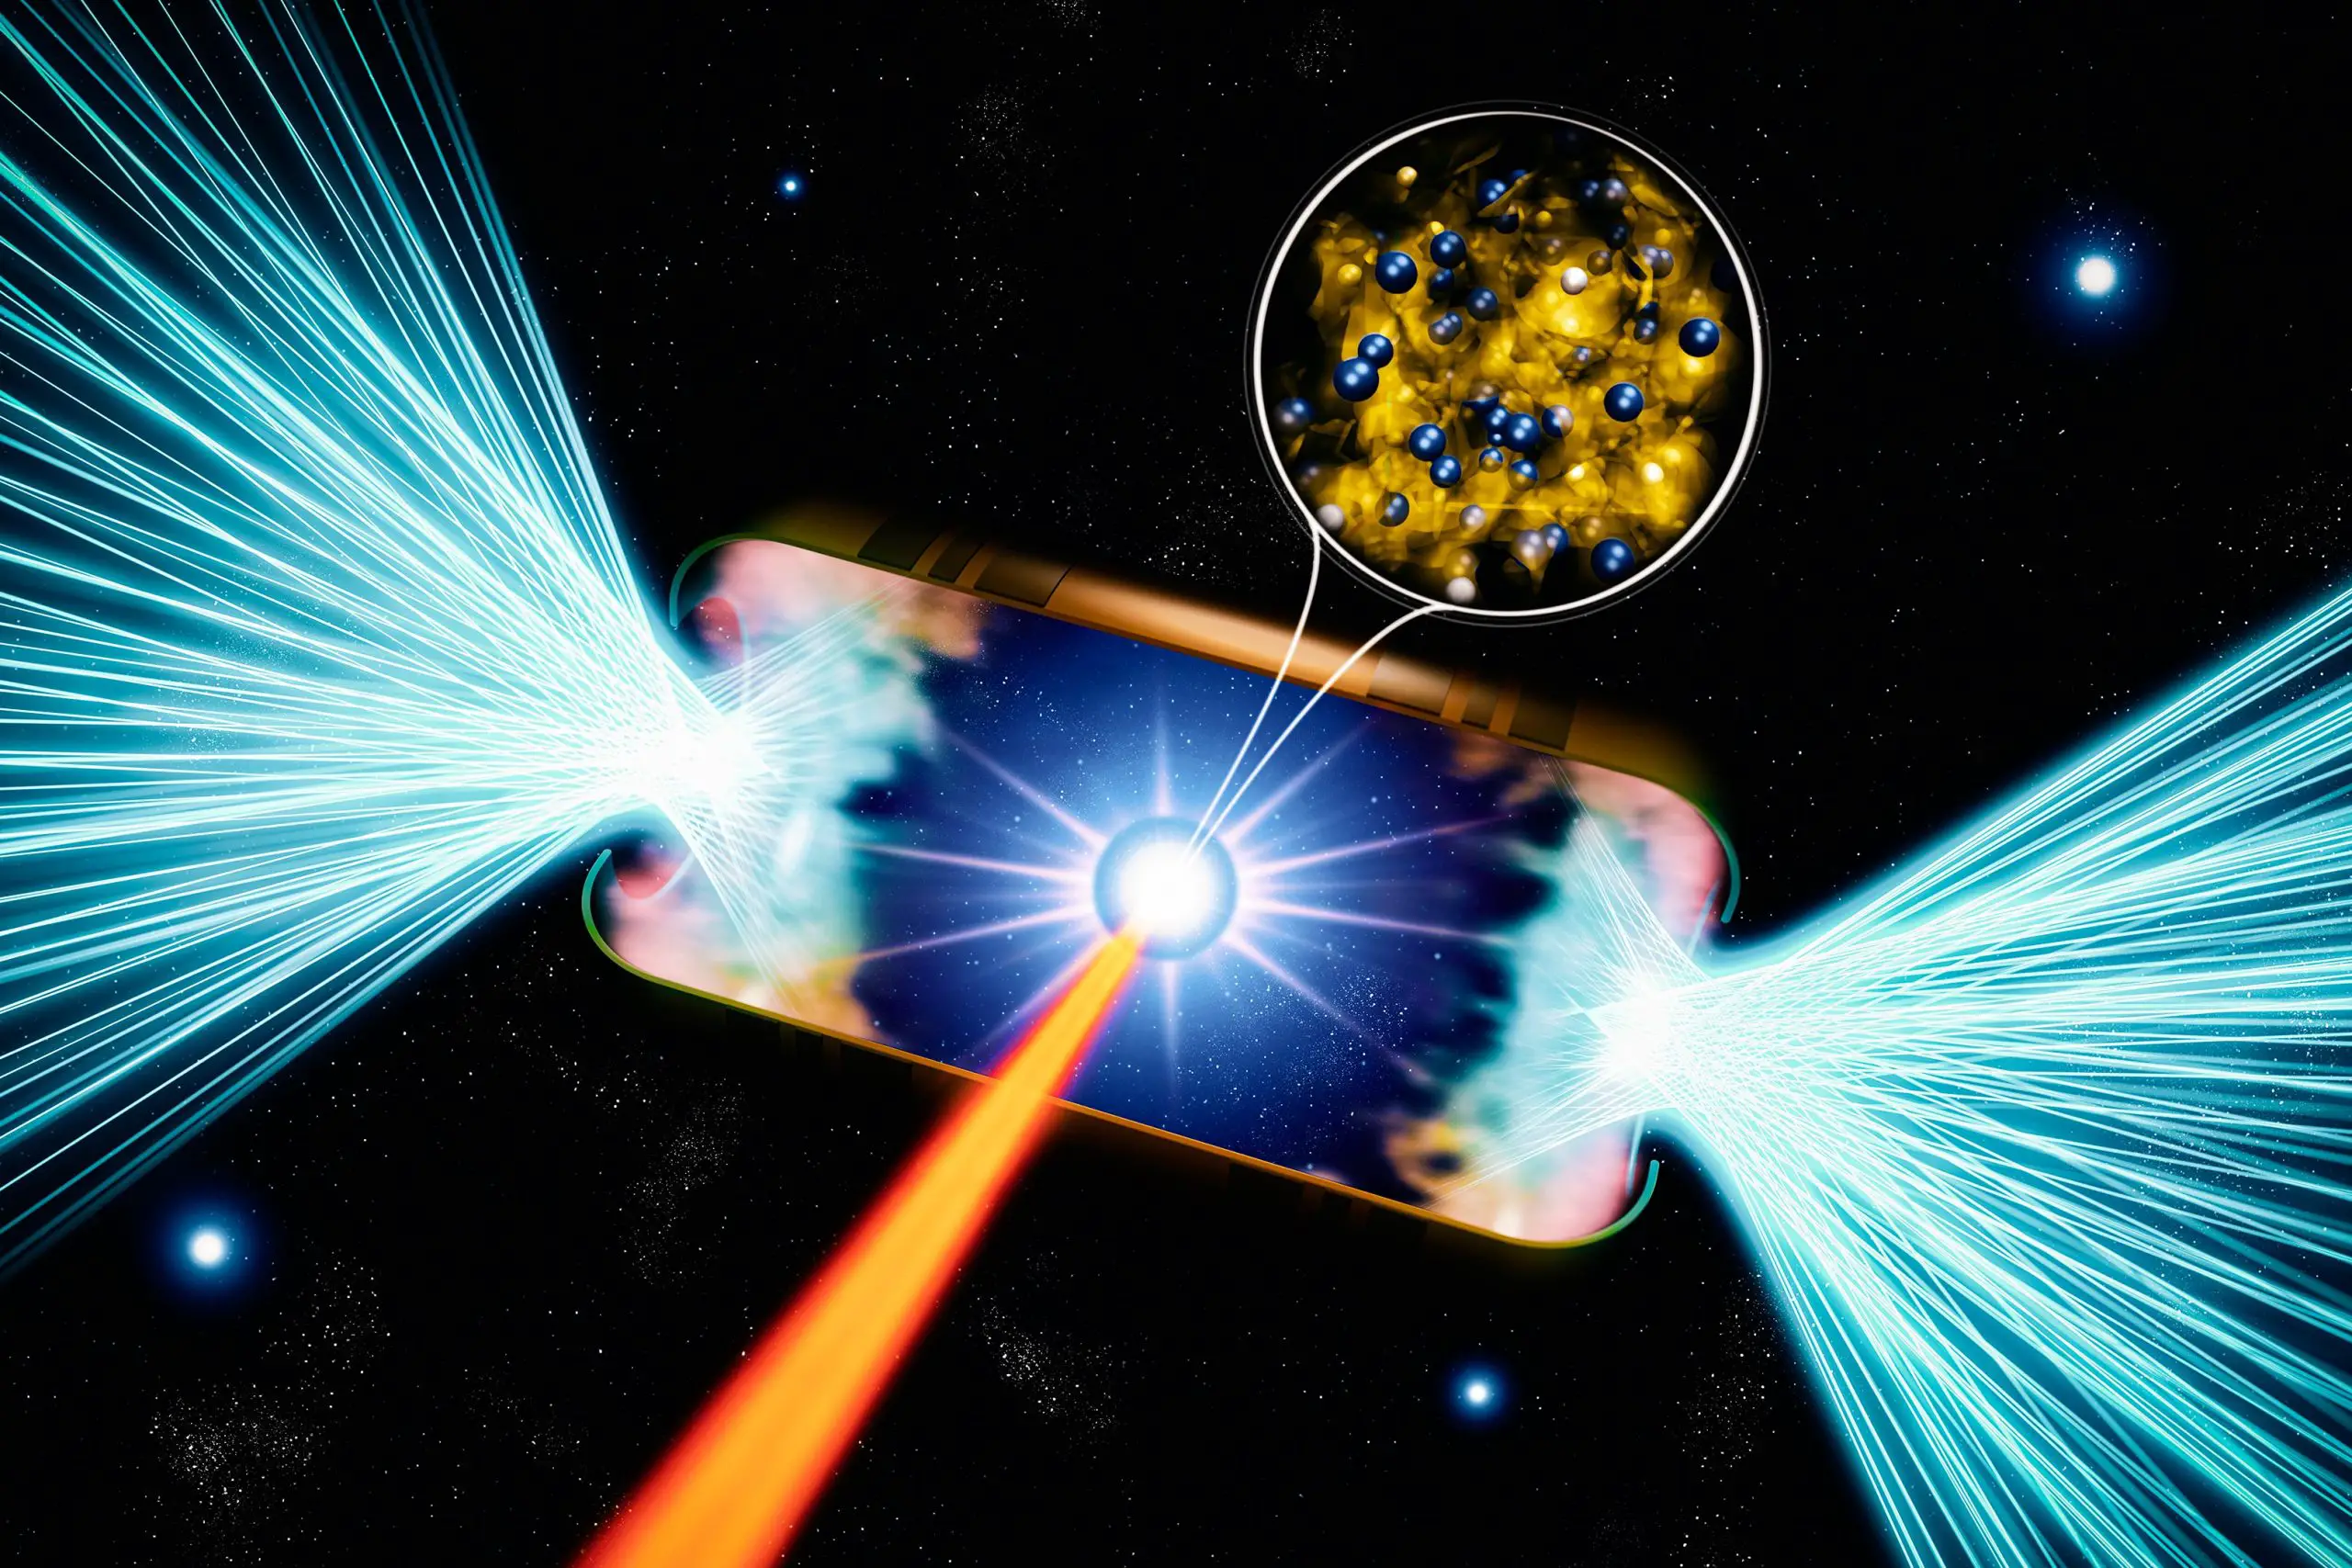 De krachtigste laser ter wereld onthult de geheimen van ionisatie als gevolg van druk in sterren en kernfusie